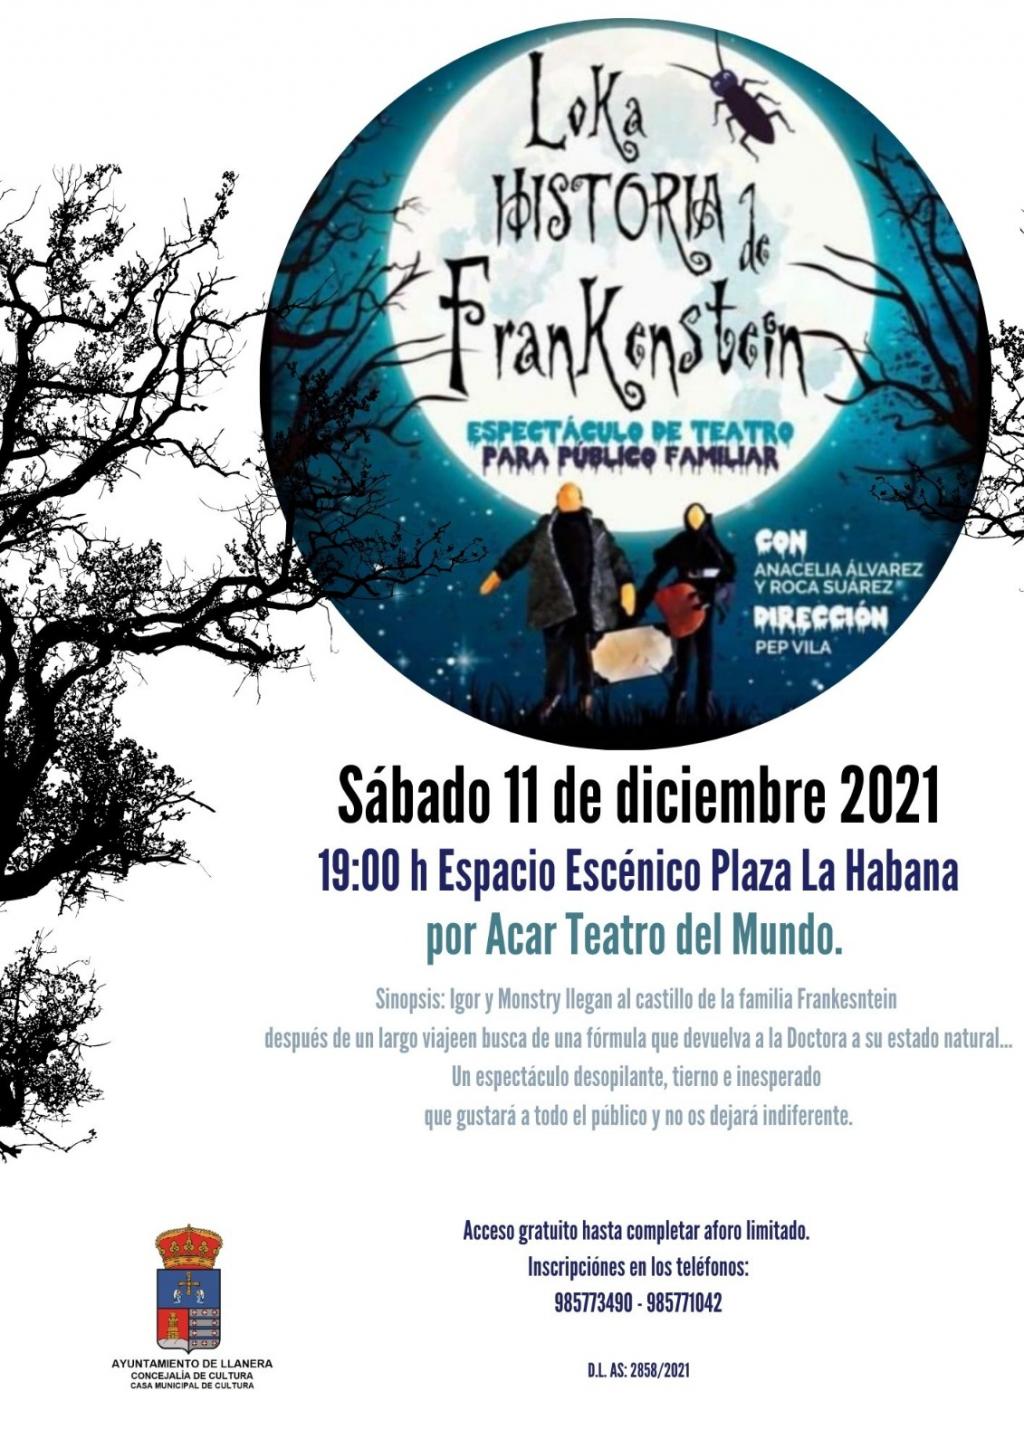 El Tapin -  El espacio escénico de la Plaza de La Habana acoge la obra "La Loka historia de Frankestein" el 11 de diciembre